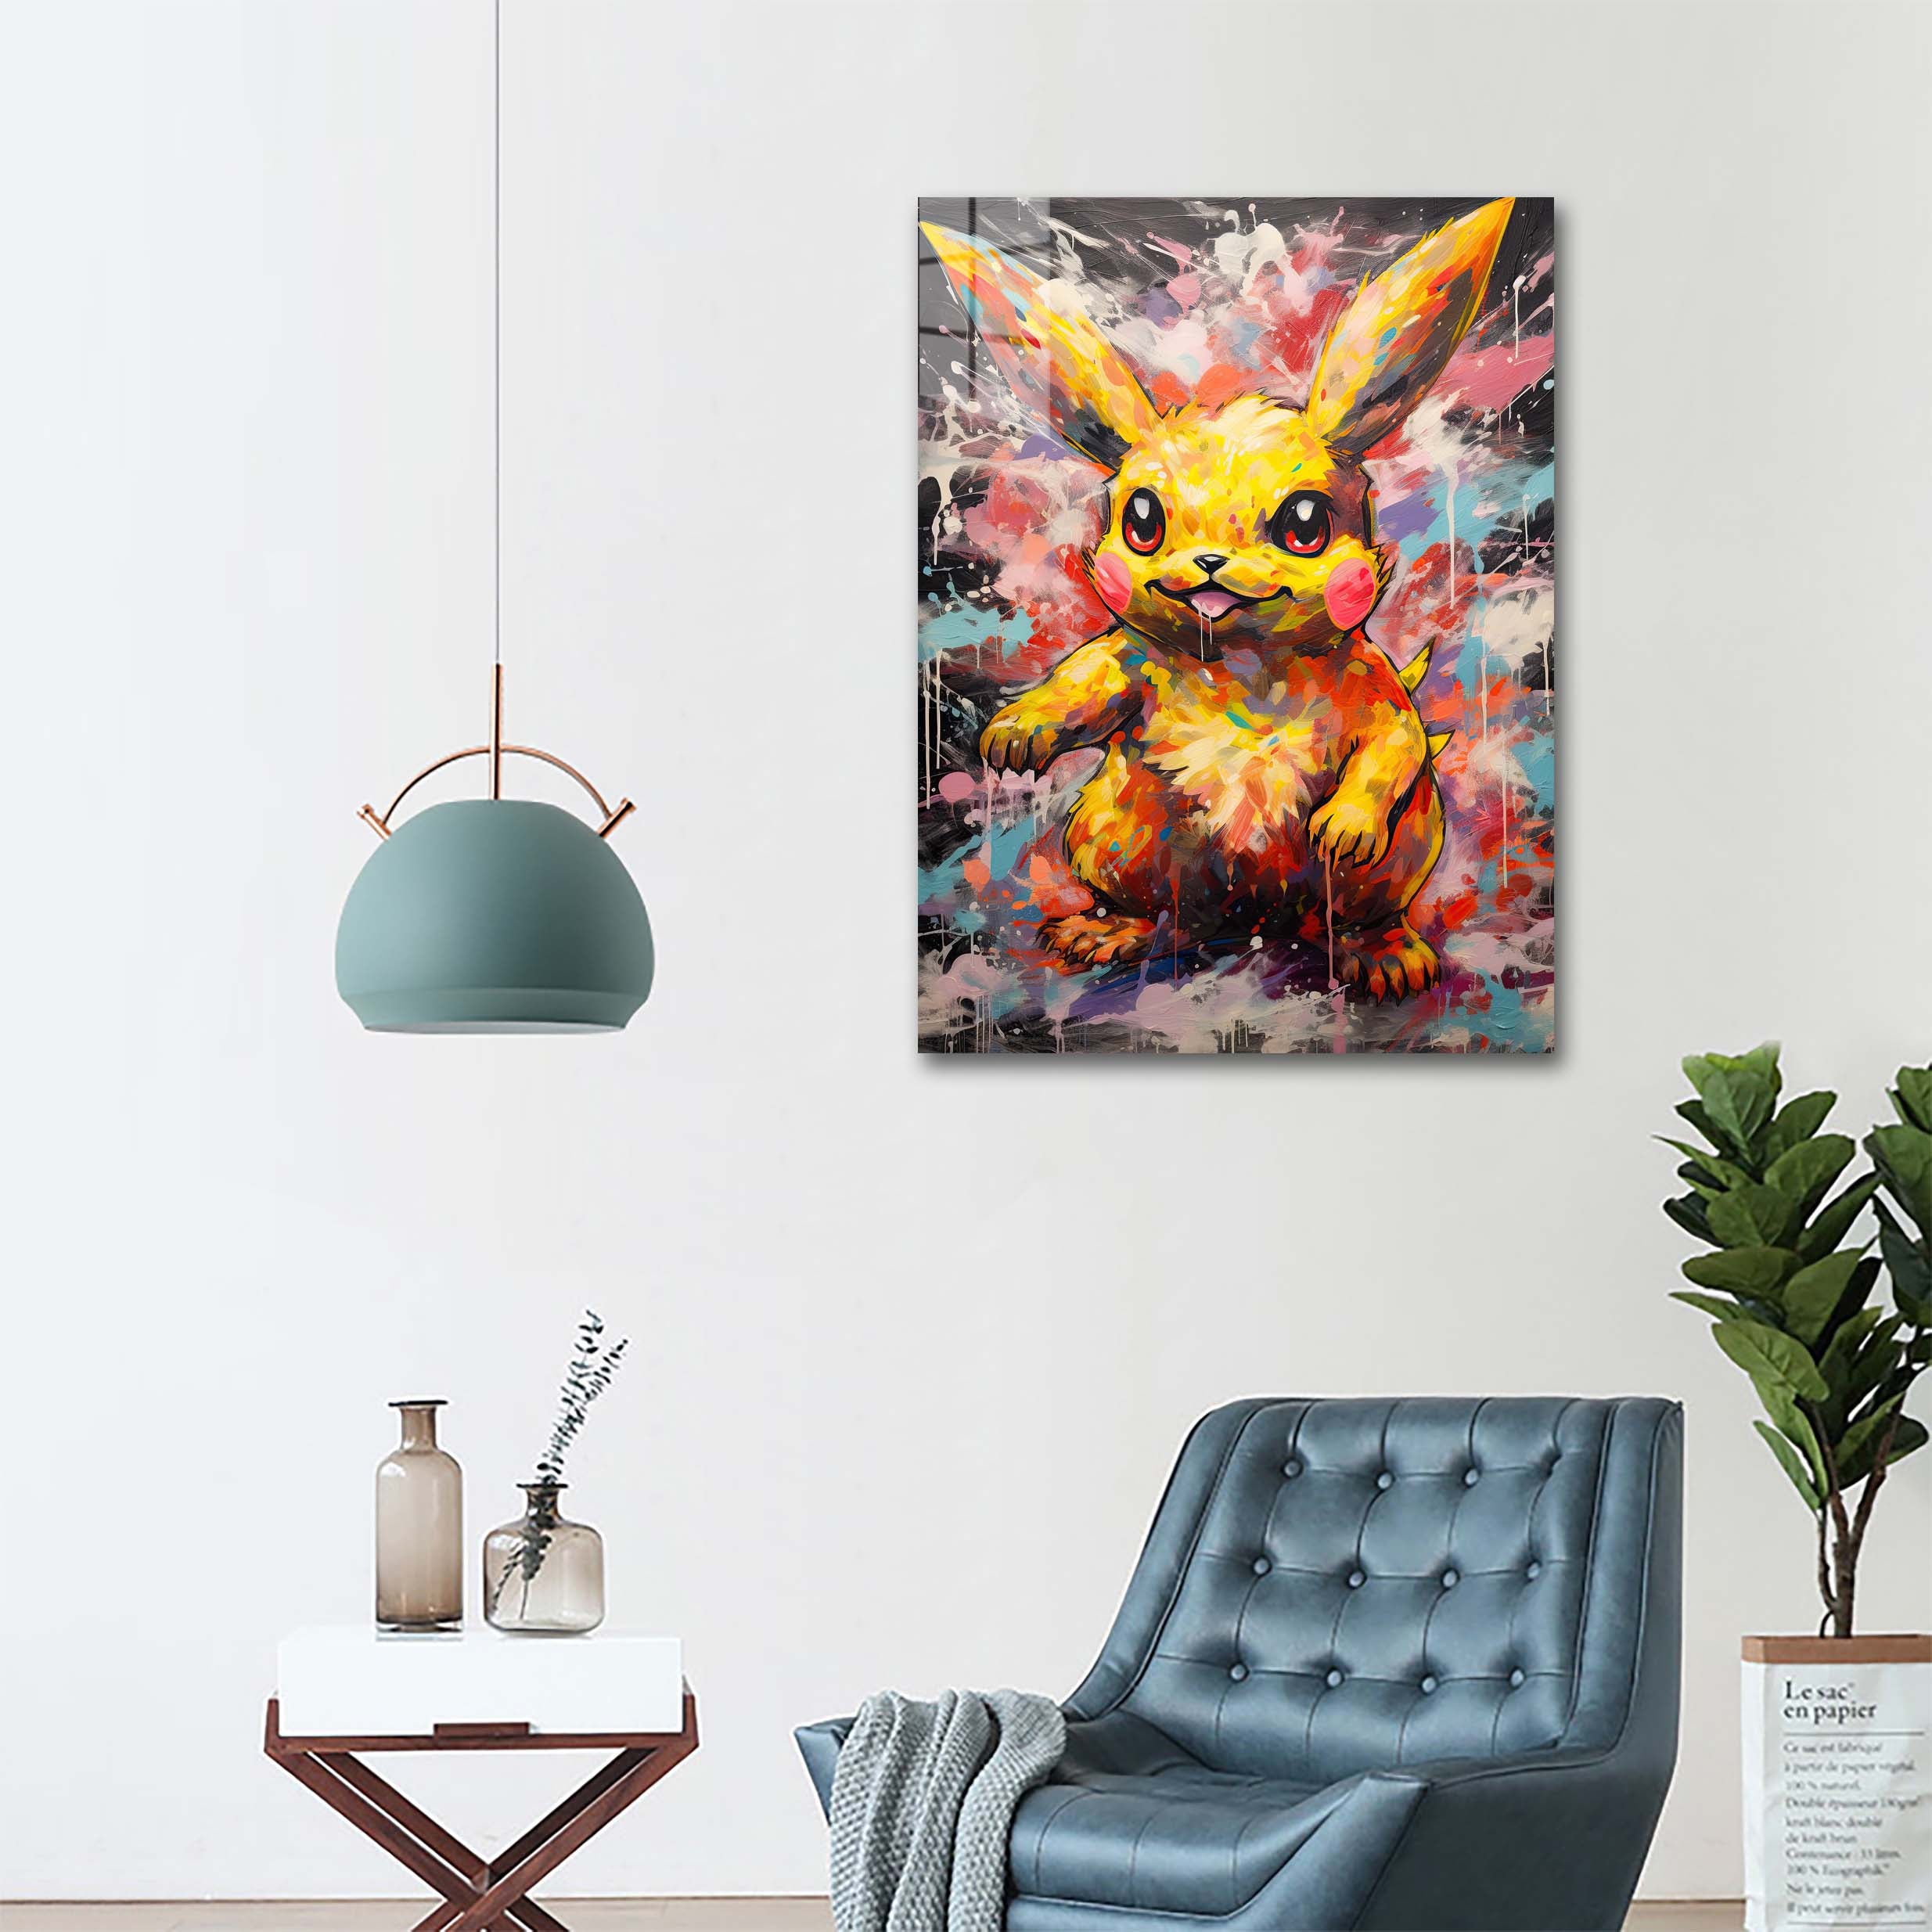 Pikachu-Artwork by @Silentheal